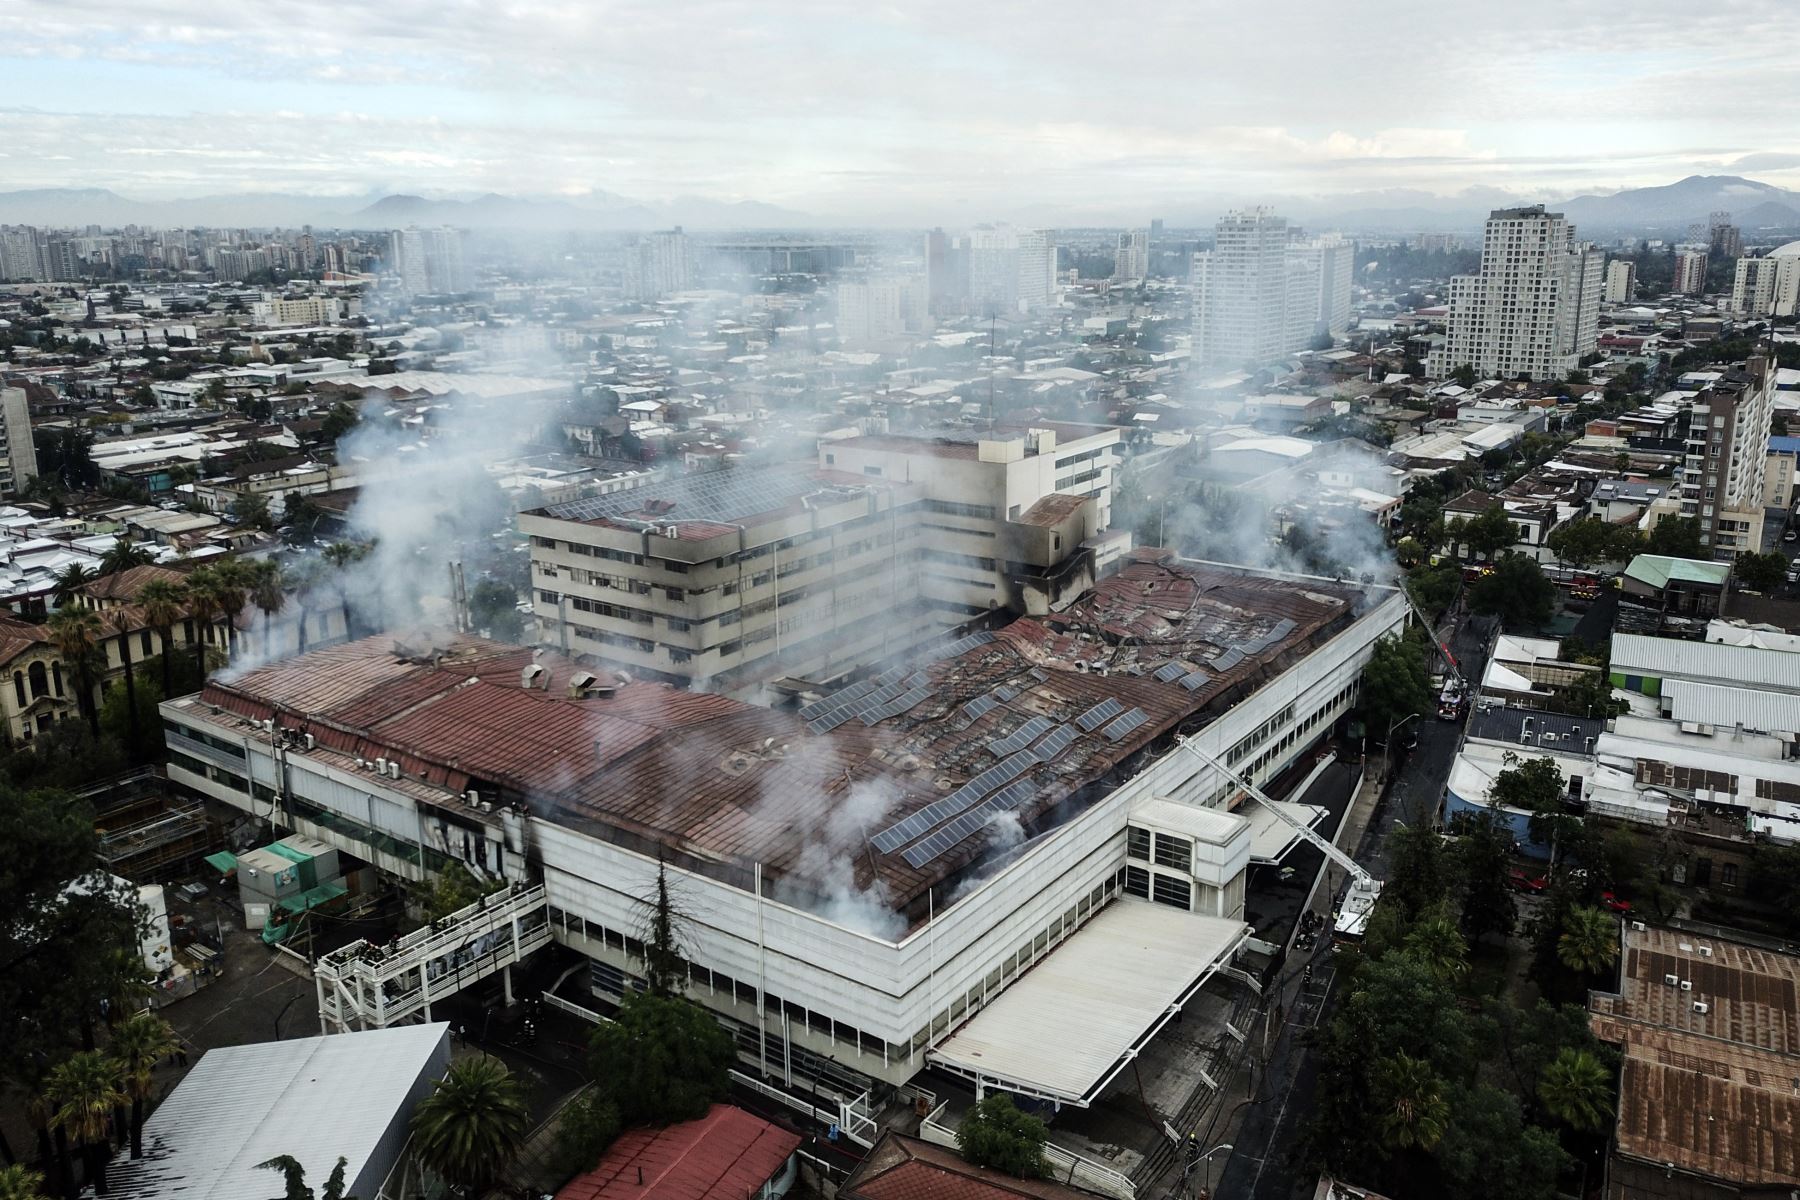 Un incendio en el Hospital San Borja de Santiago en la madrugada del sábado obligó a la evacuación de parte del edificio por humo y llamas. sin que se reporten heridos ni muertos en el incidente, que afectó a una unidad pediátrica.
Foto: AFP